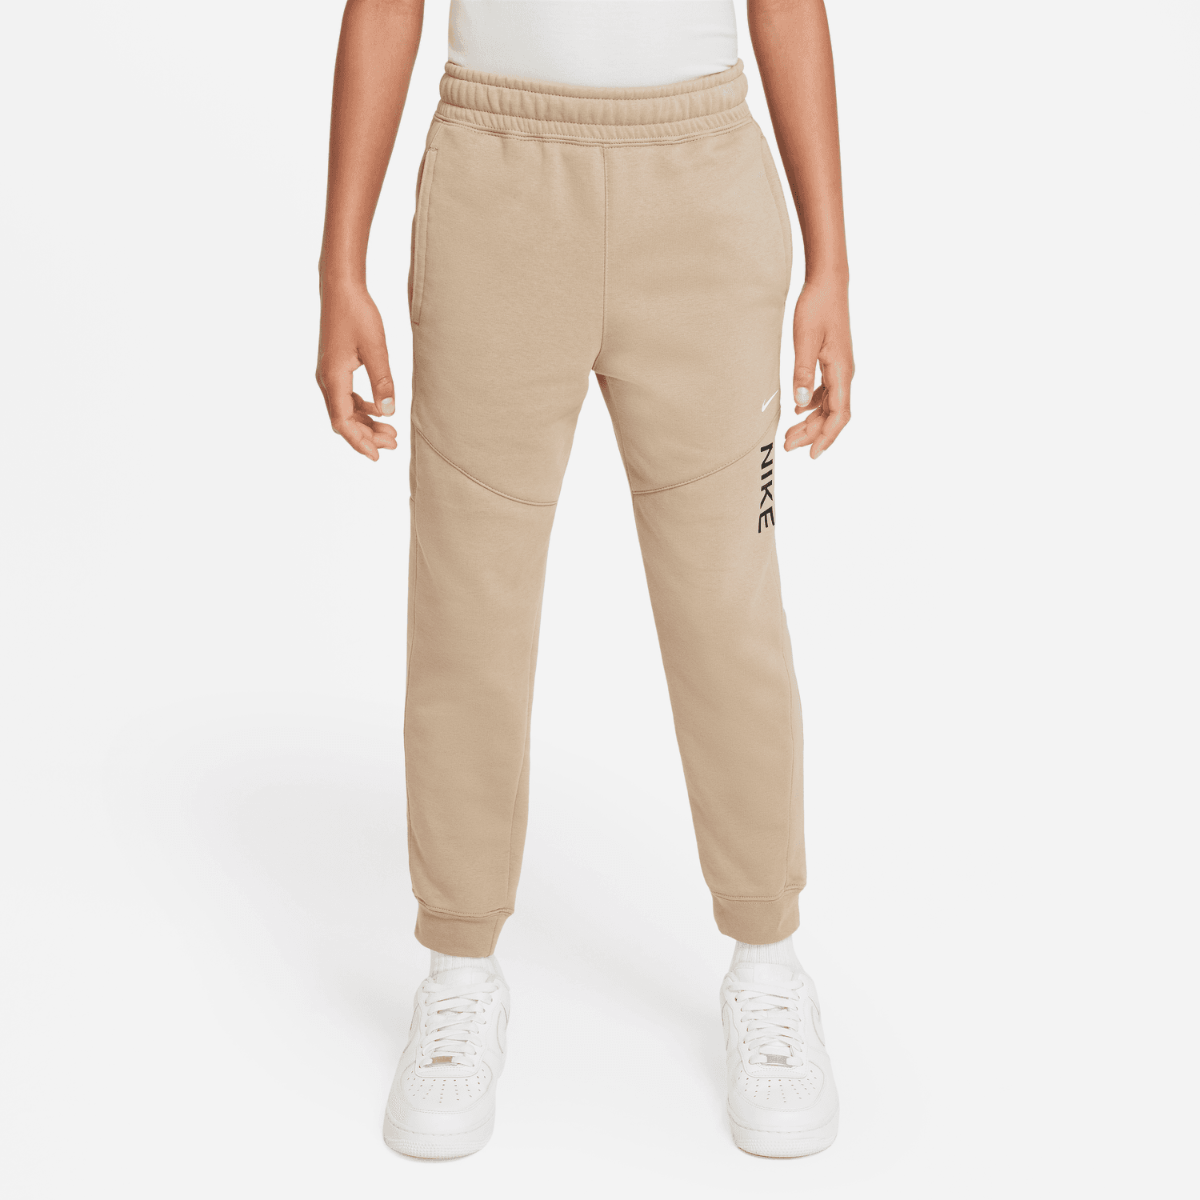 Pantalon Nike Sportswear Tech Fleece Junior - Beige